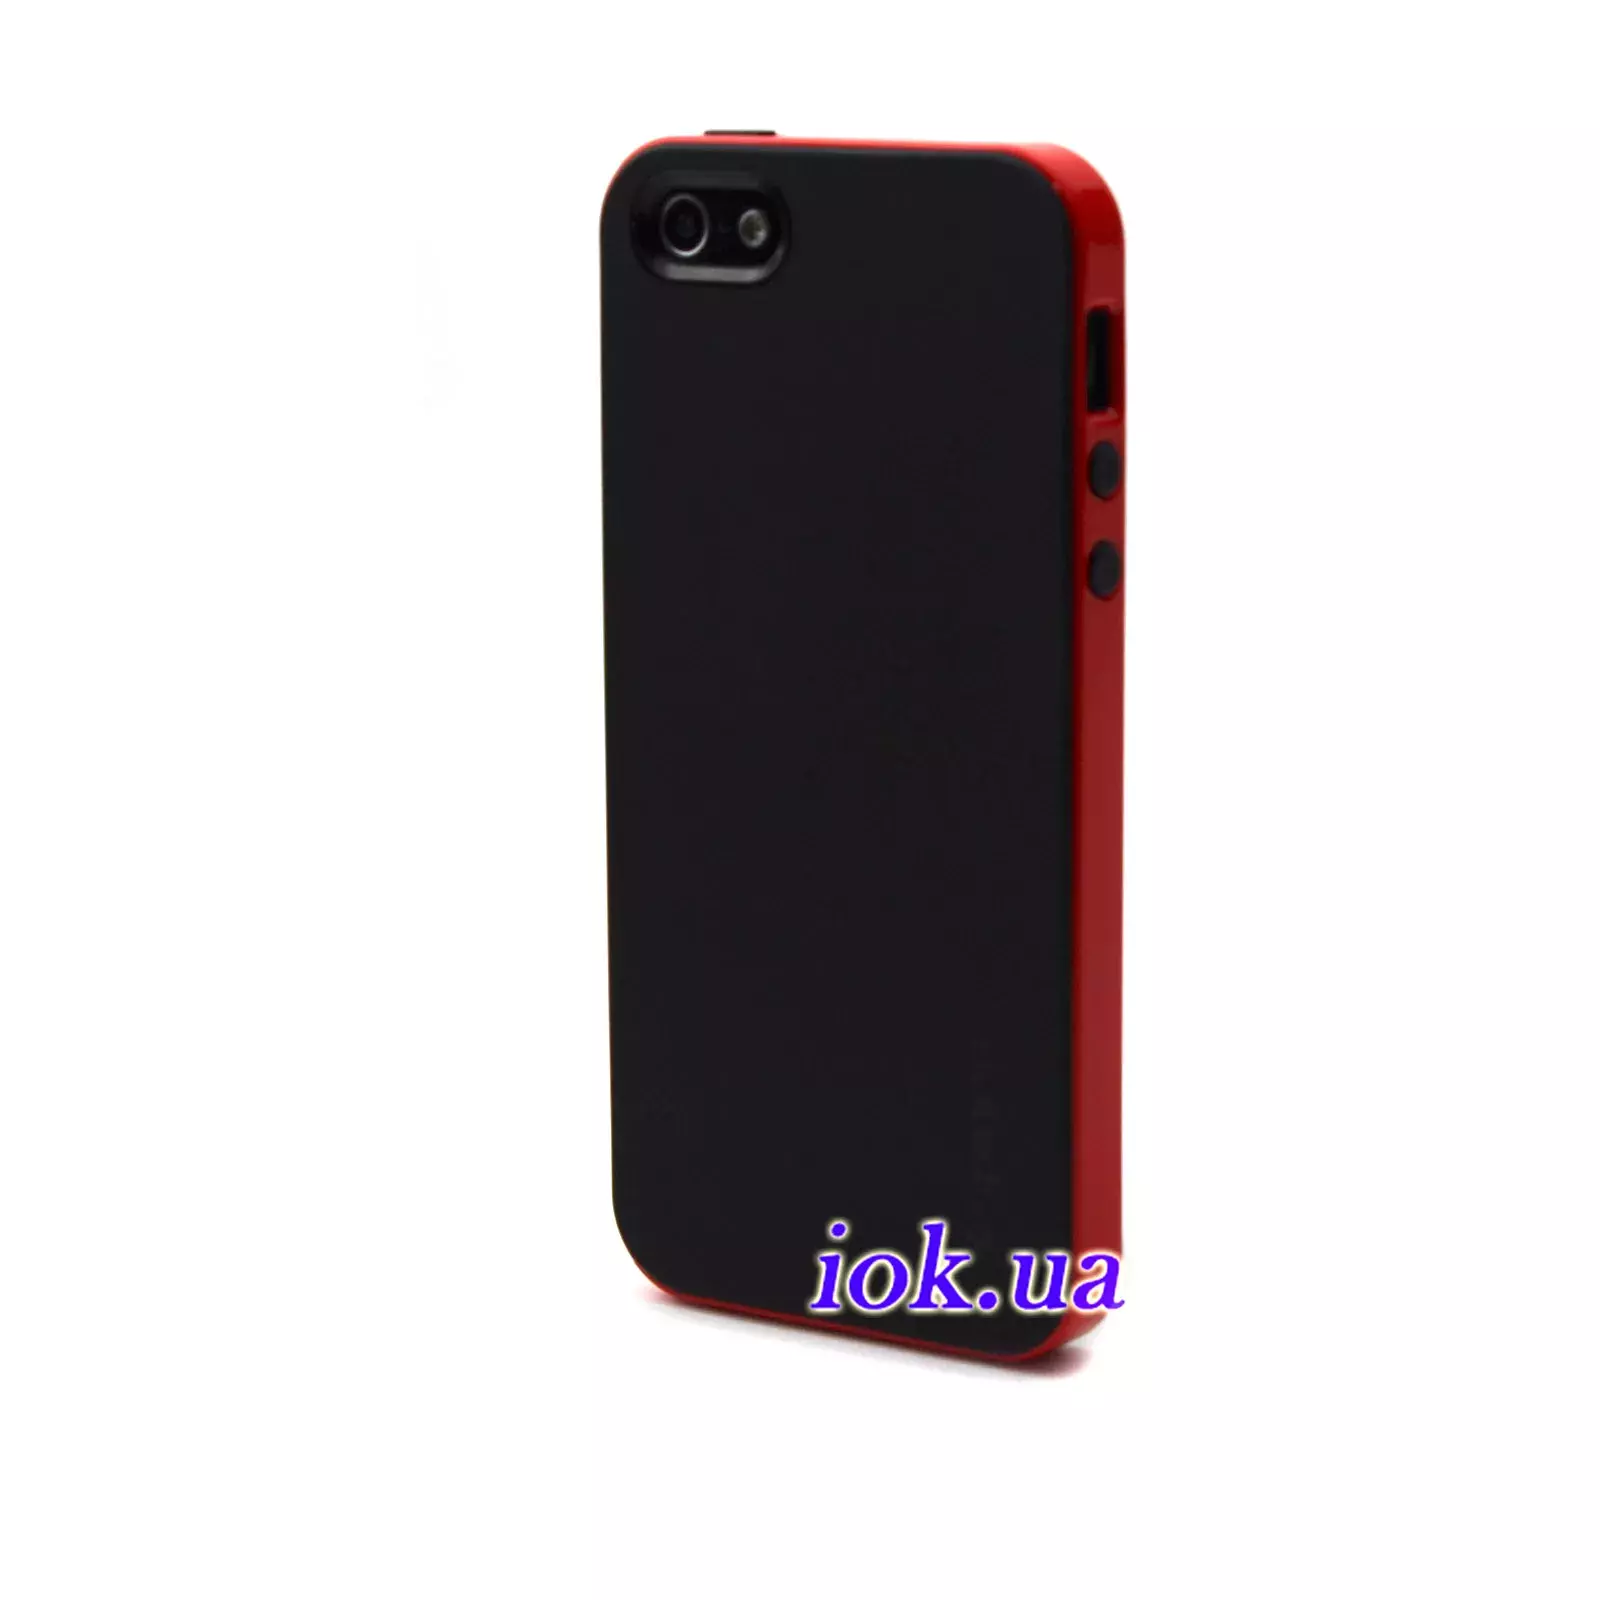 Чехол Spigen Neo Hybrid для iPhone 5/5S, красный